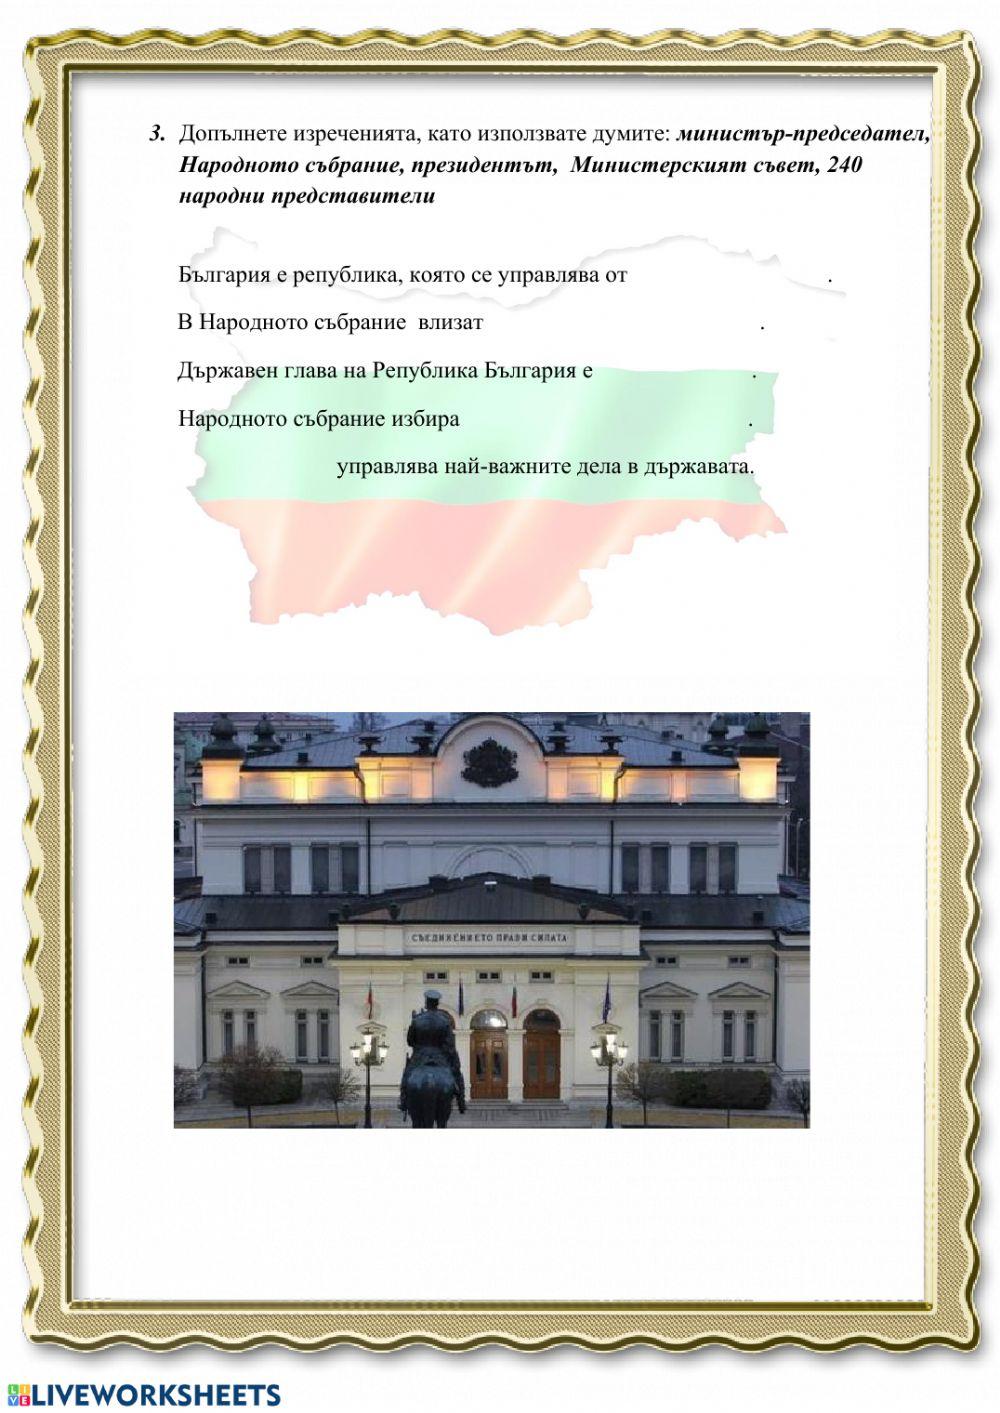 Органи на управление в Република България